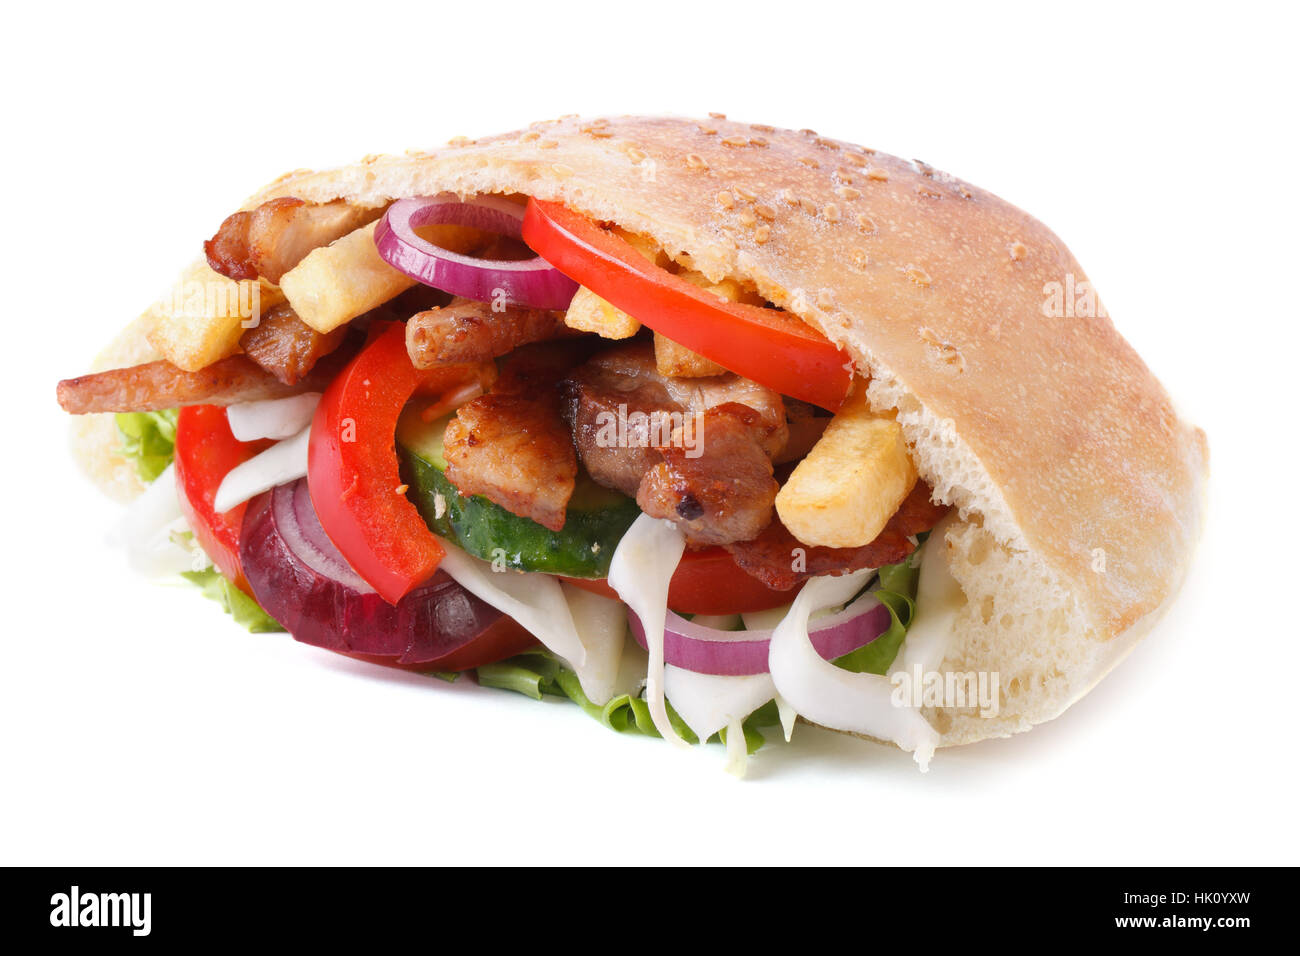 Délicieux döner kebab avec de la viande, des légumes et des frites dans le pain pita libre isolé sur fond blanc l'horizontale Banque D'Images